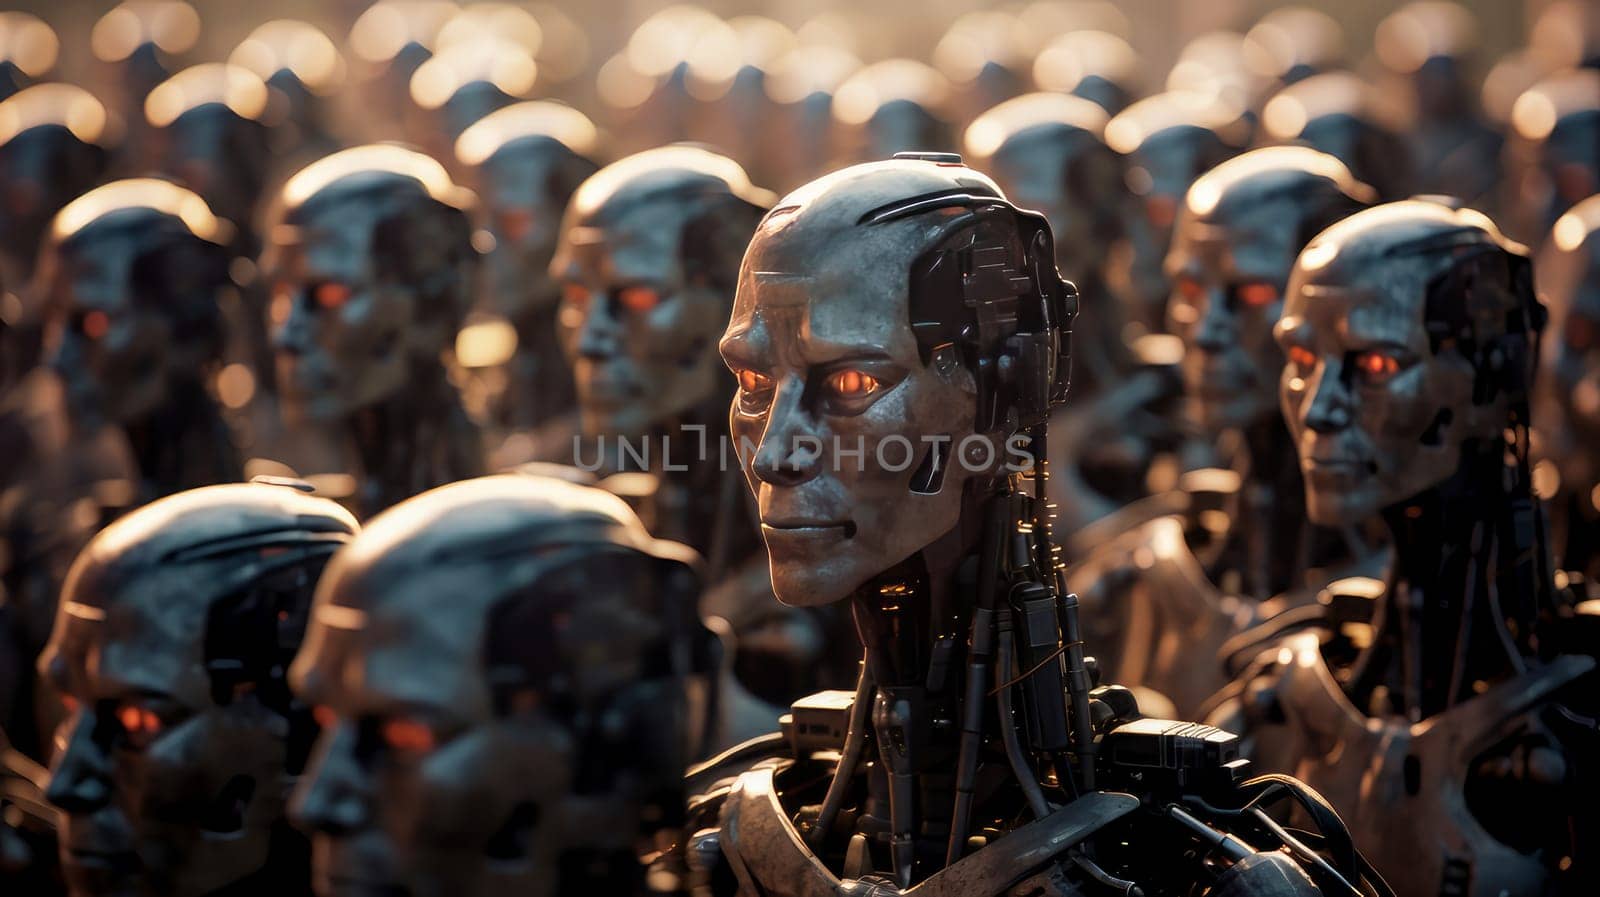 many identical robots by Alla_Yurtayeva